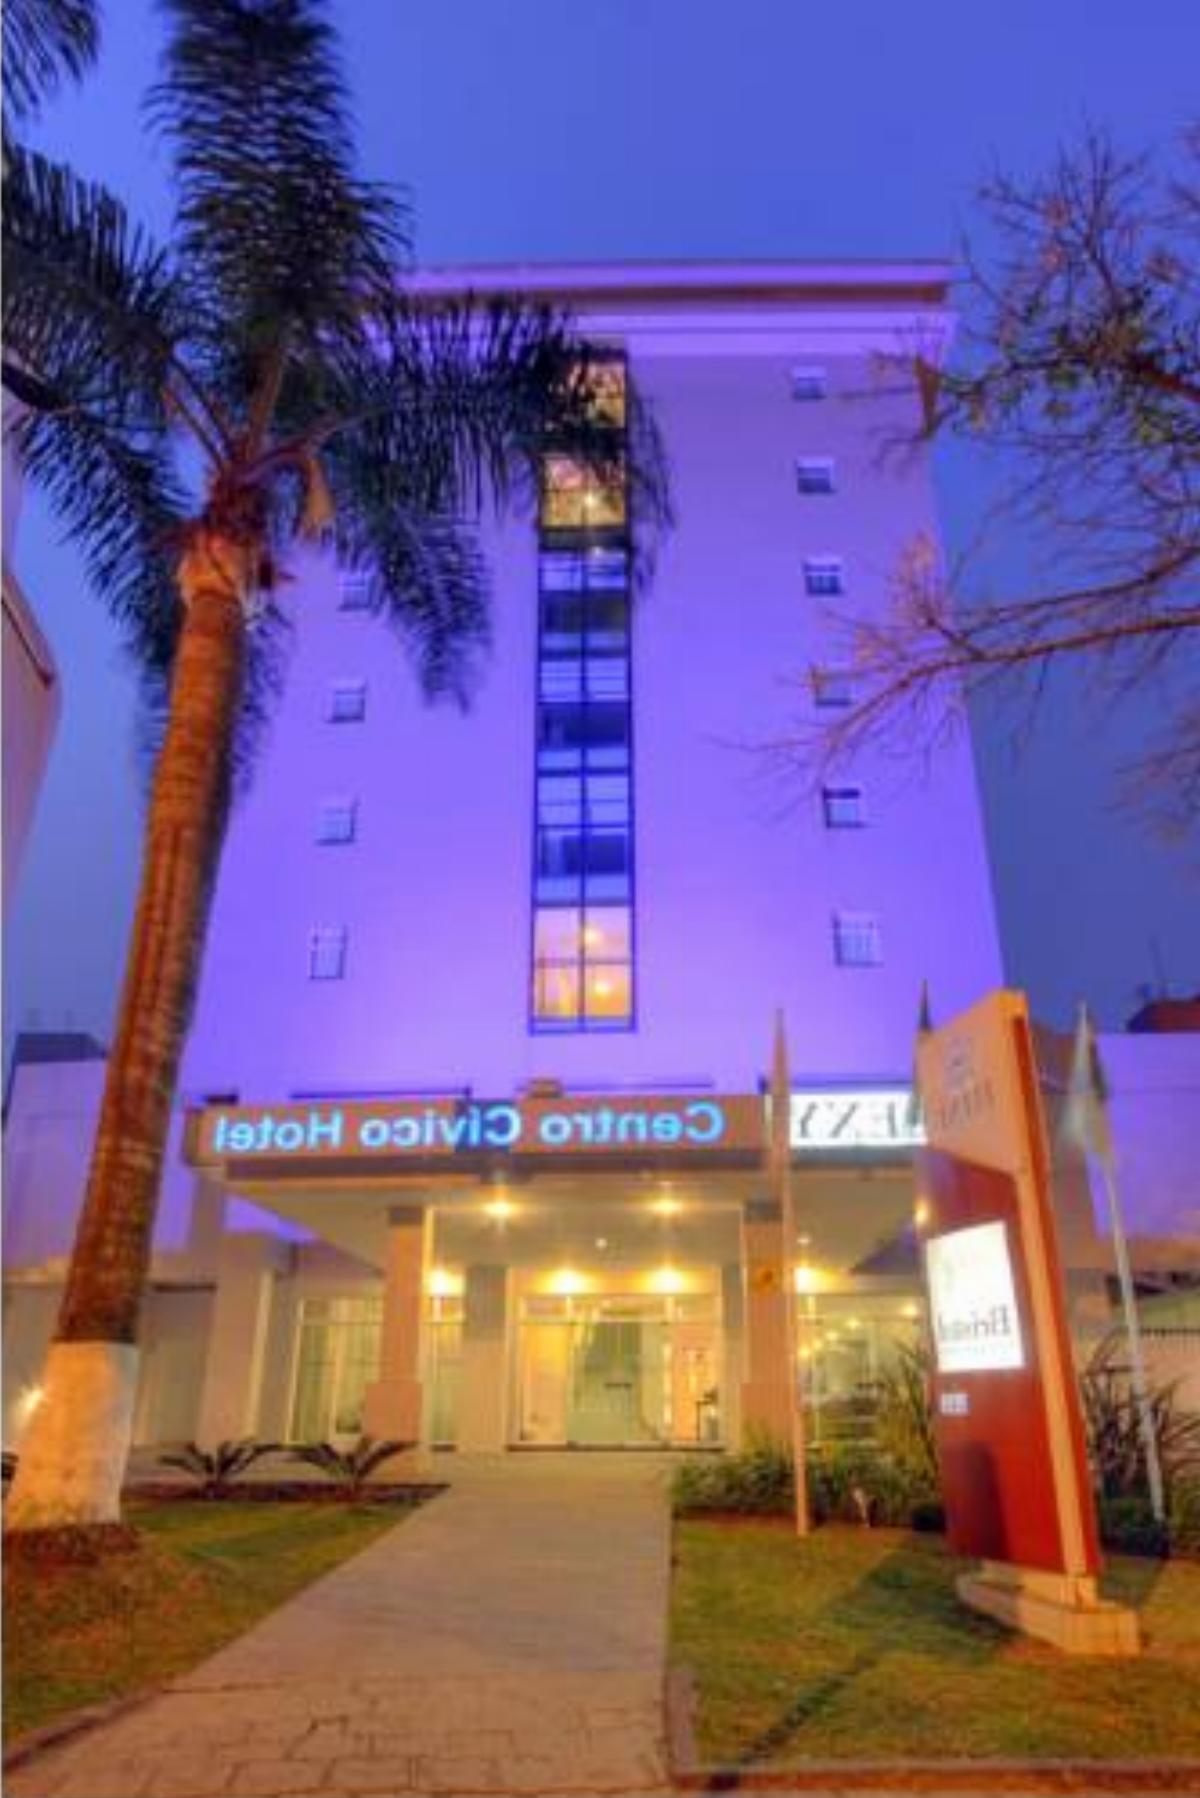 Bristol Centro Civico Hotel Hotel Curitiba Brazil